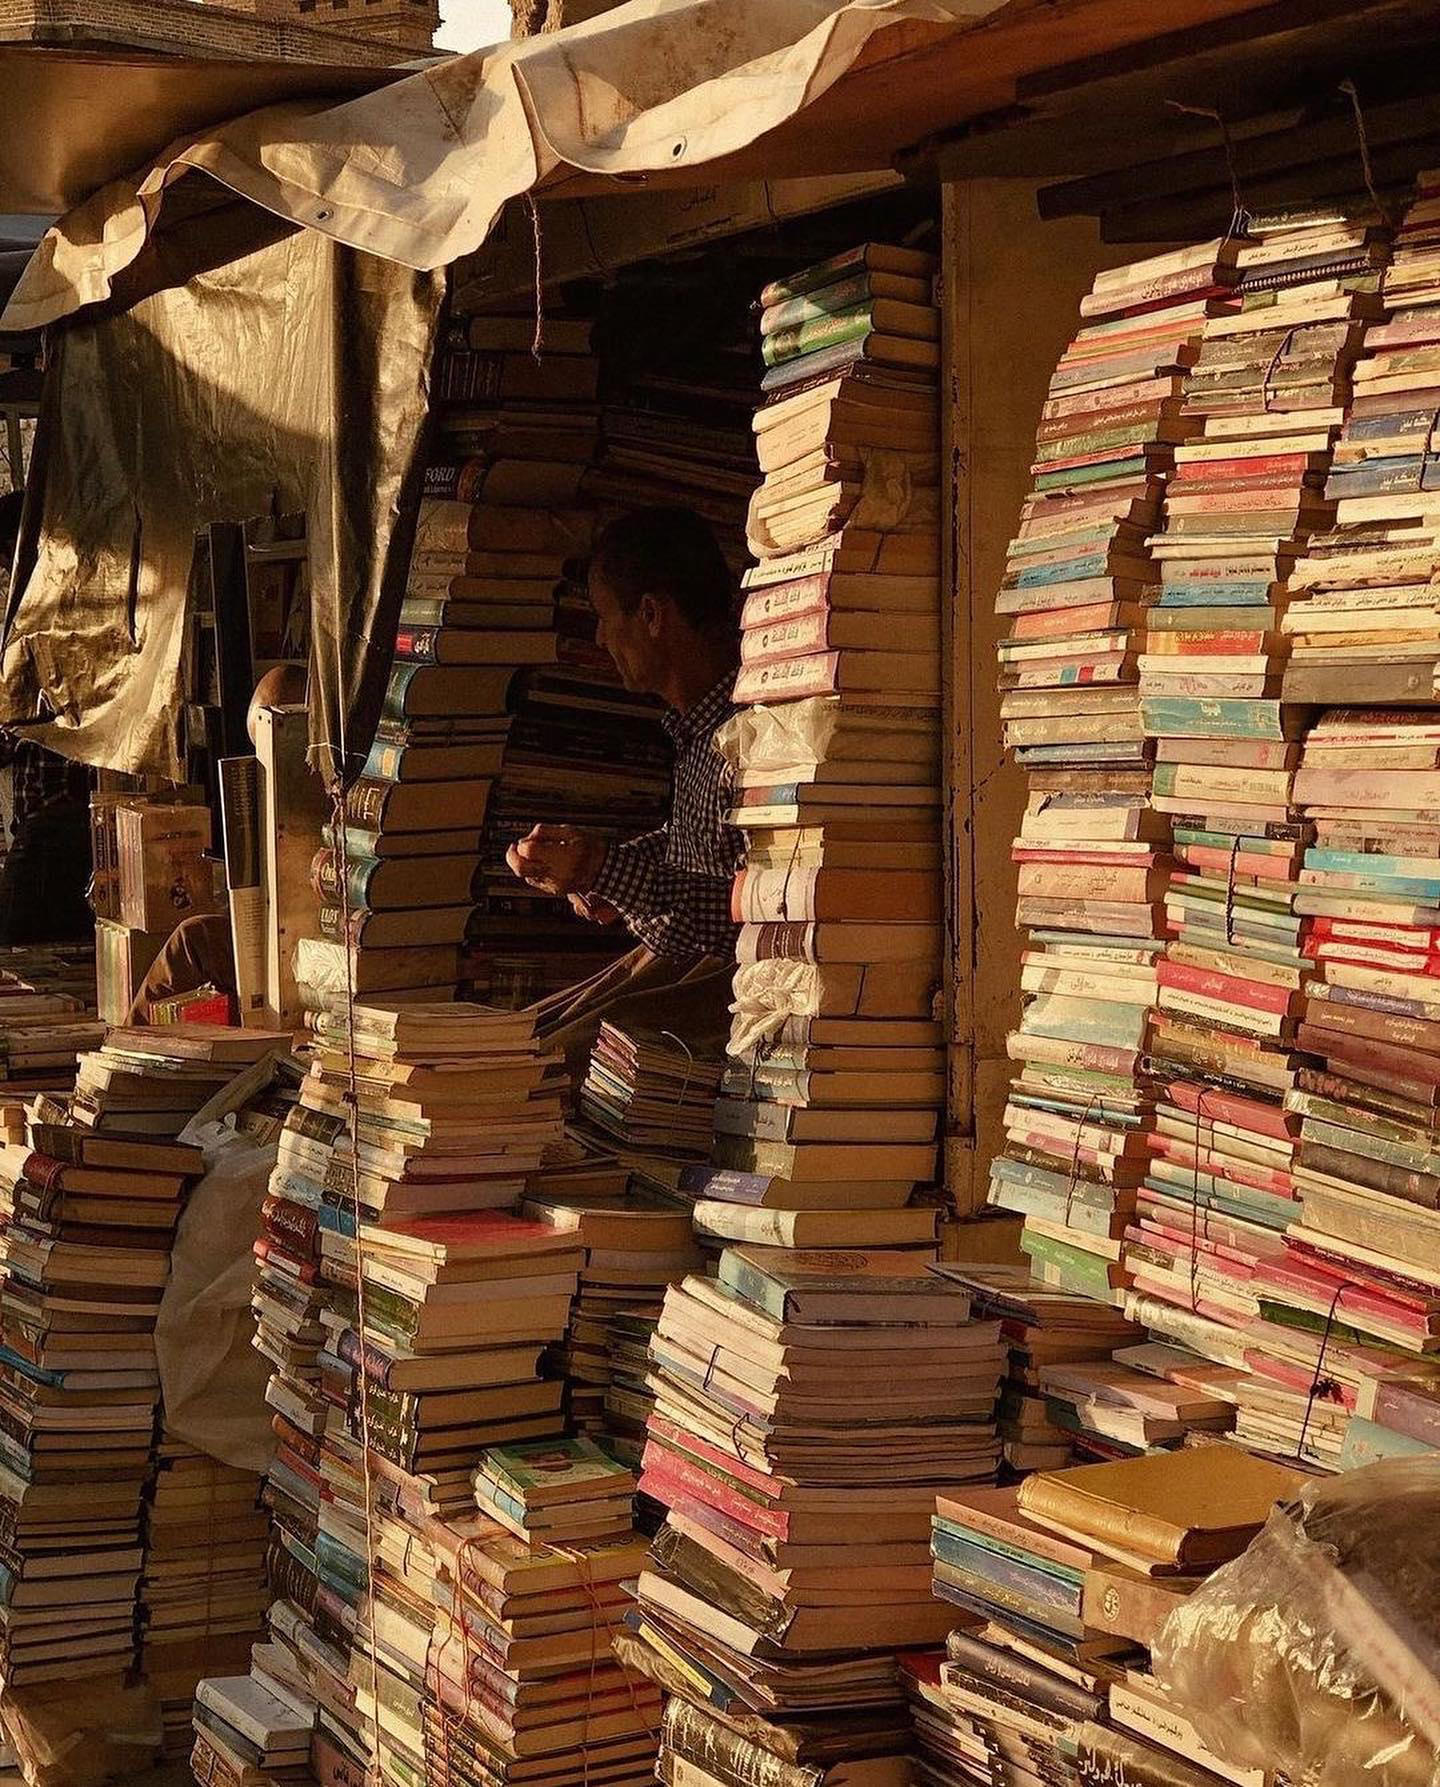 Book seller in Sulaymaniyah, Iraq, 2021, photo by Dastan Khdir #dastan